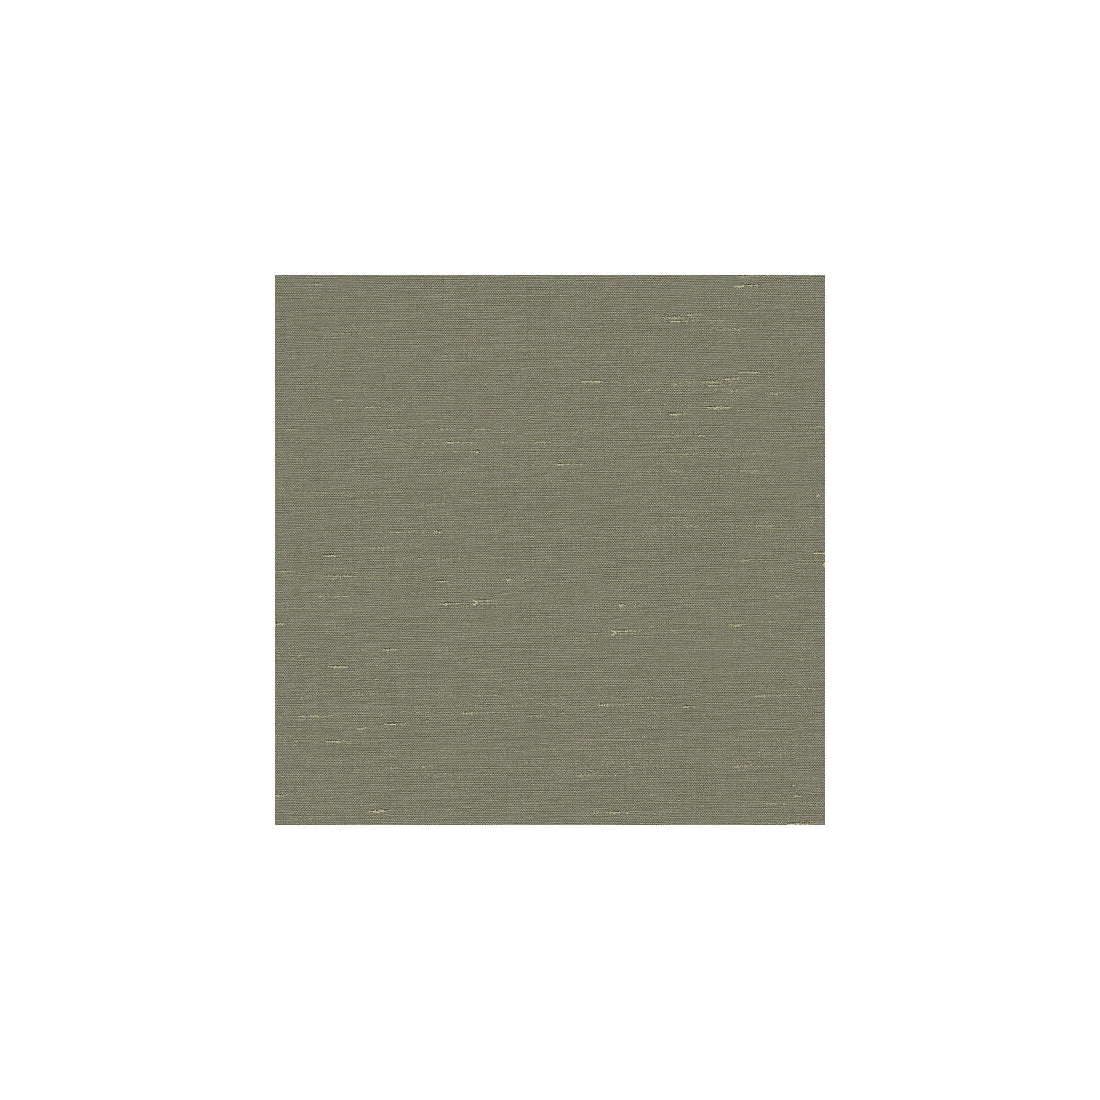 Kravet Basics fabric in 3777-11 color - pattern 3777.11.0 - by Kravet Basics